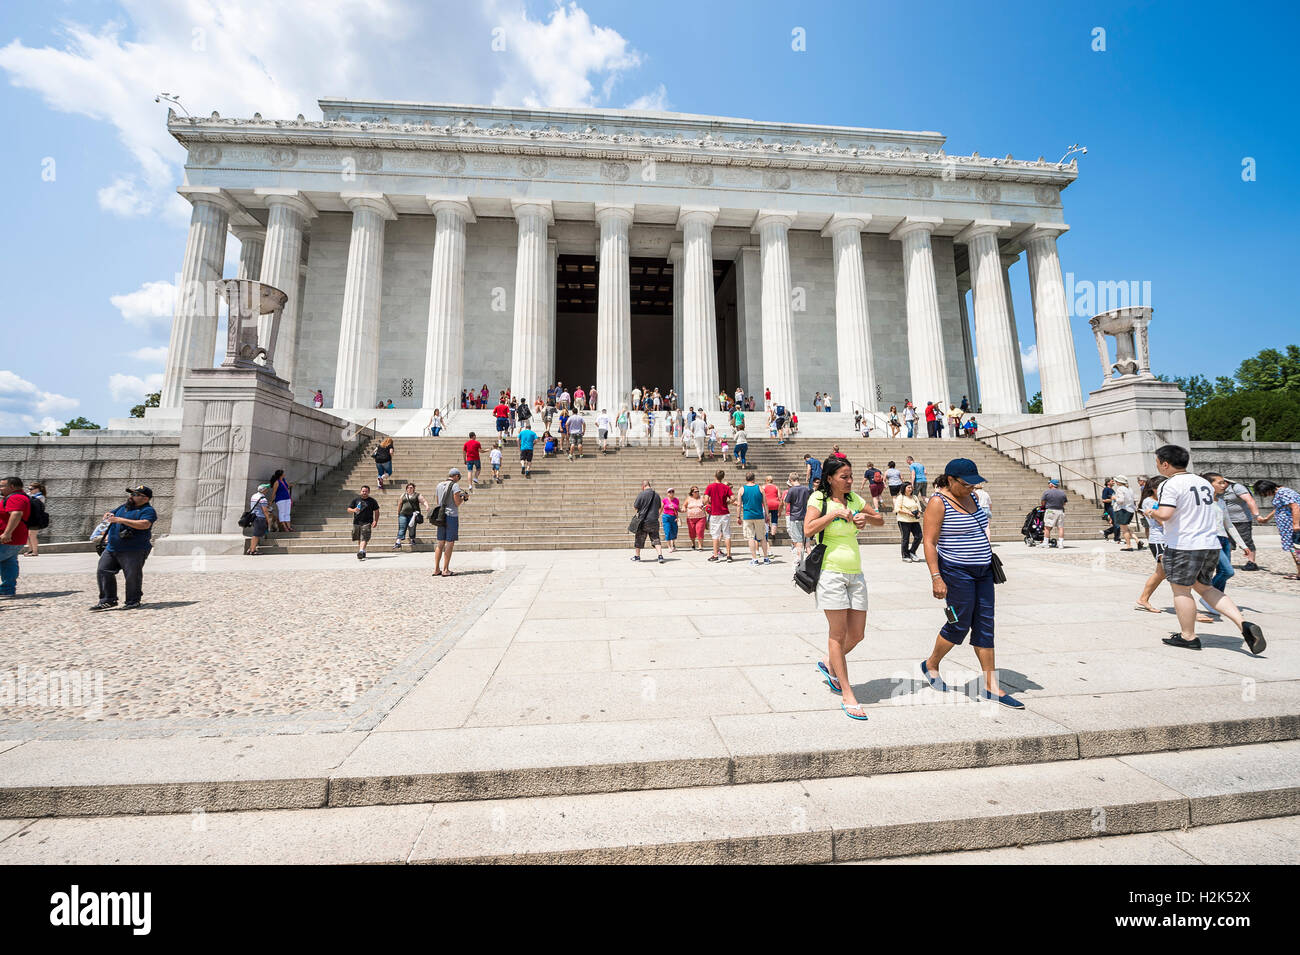 WASHINGTON DC - Luglio 30, 2014: i turisti affollano le fasi nella parte anteriore del Lincoln Memorial Building. Foto Stock